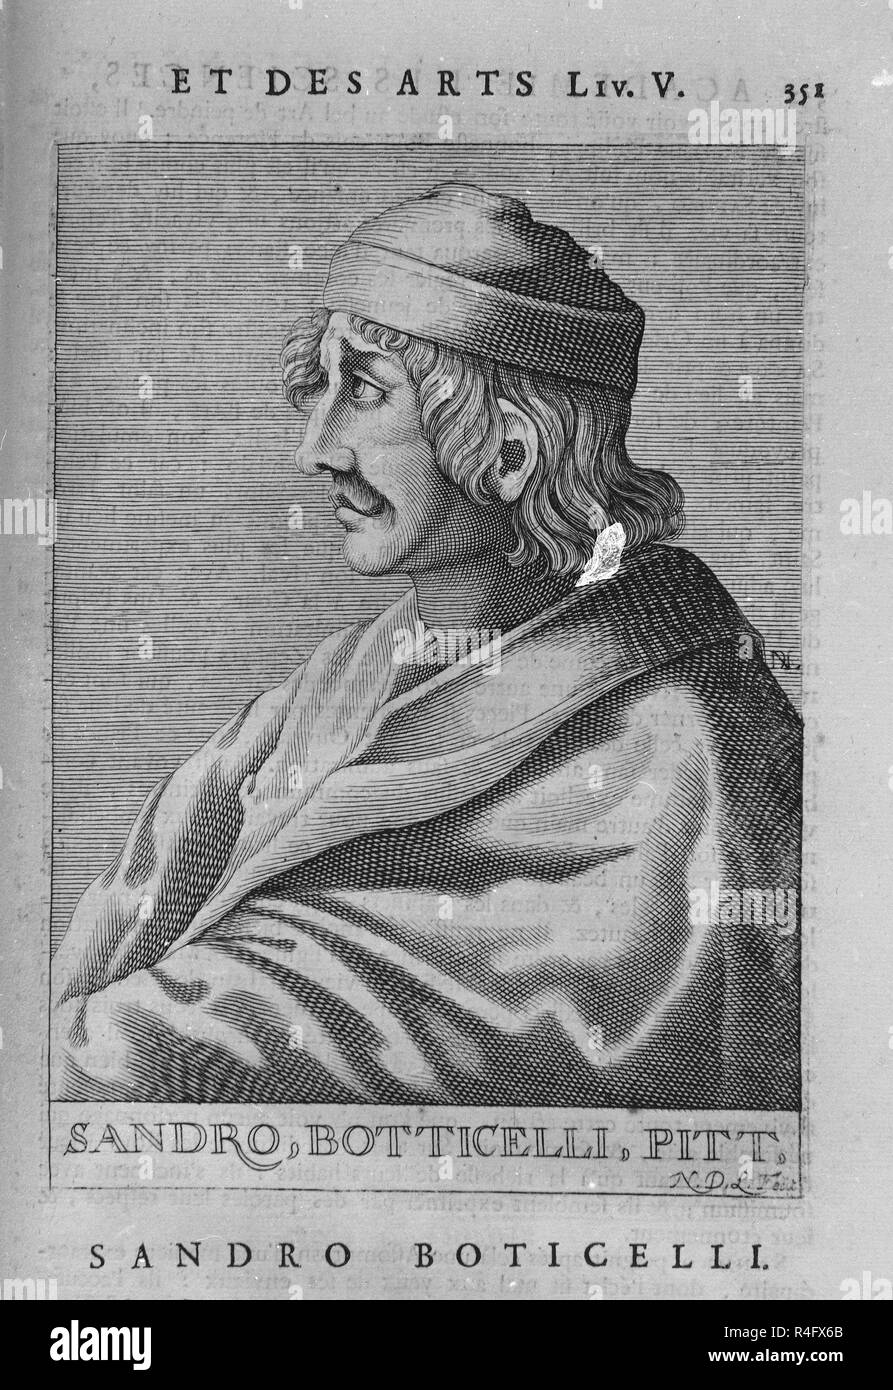 RETRATO DE SANDRO BOTTICELLI (1444/1510) - PINTOR DEL RENACIMIENTO ITALIANO. Location: PRIVATE COLLECTION. MADRID. SPAIN. Stock Photo